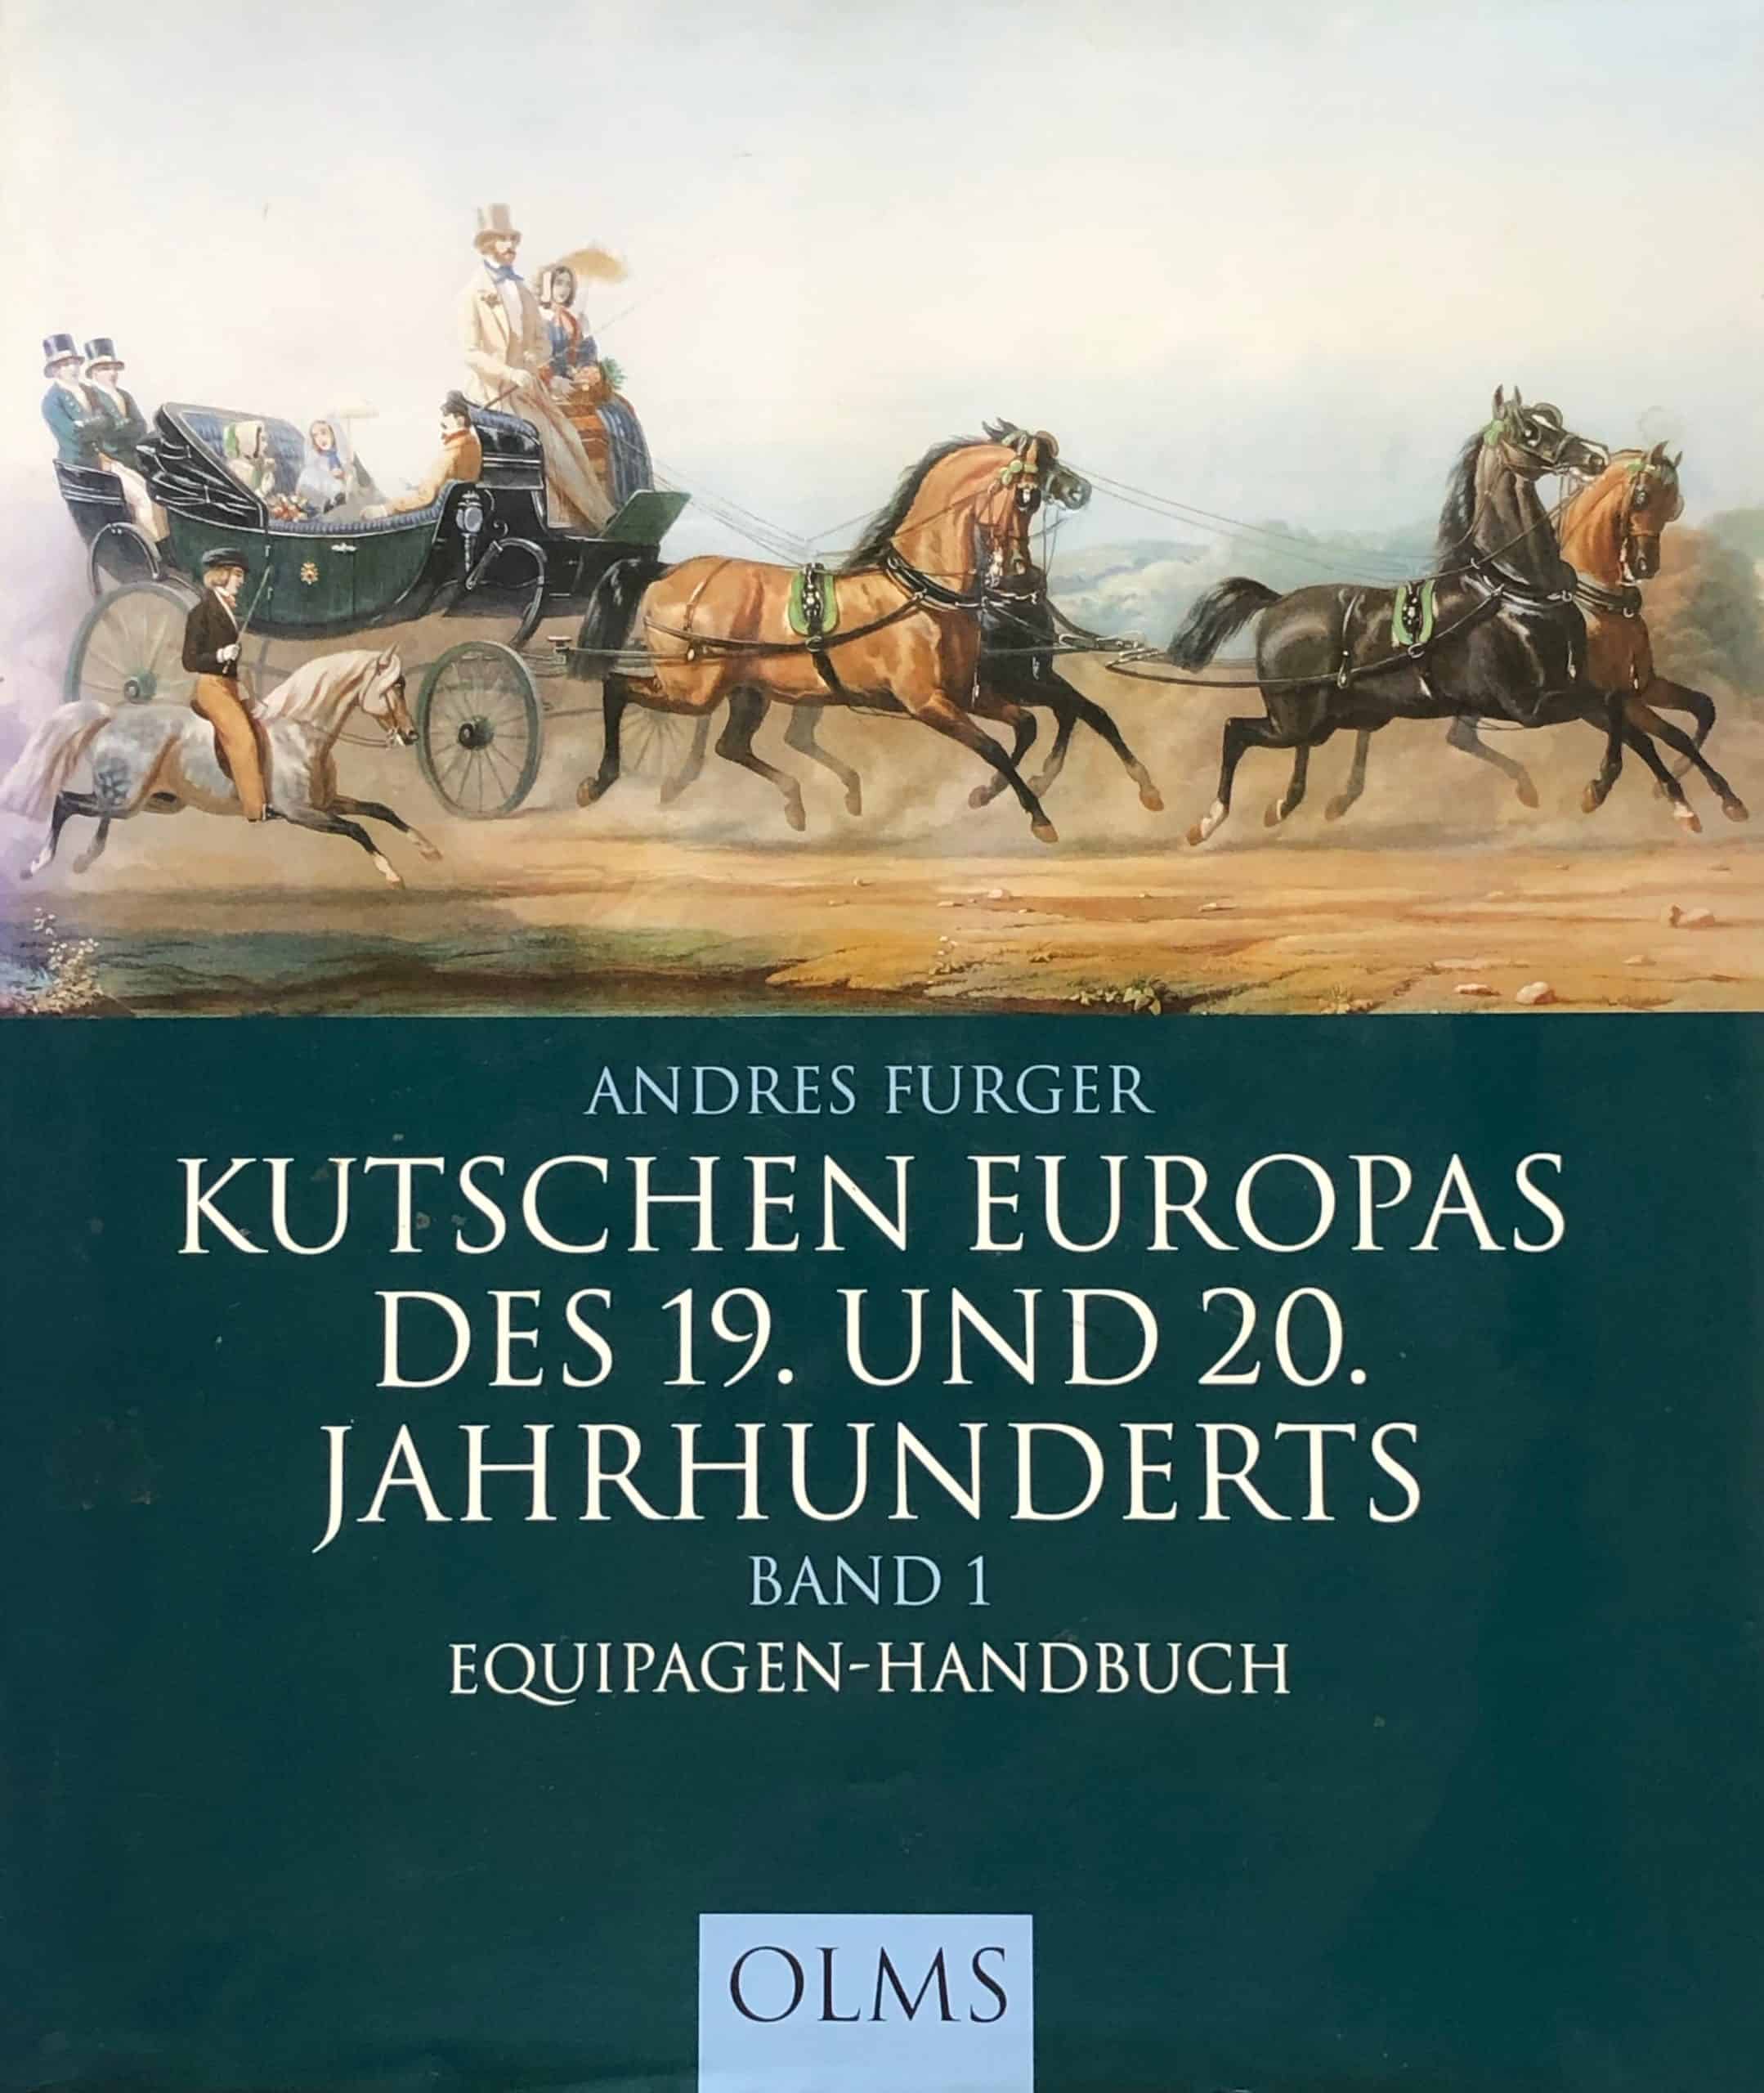 Andres Furger - Kutschen Europas des 19. und 20. Jahrhunderts - Equipagen Handbuch